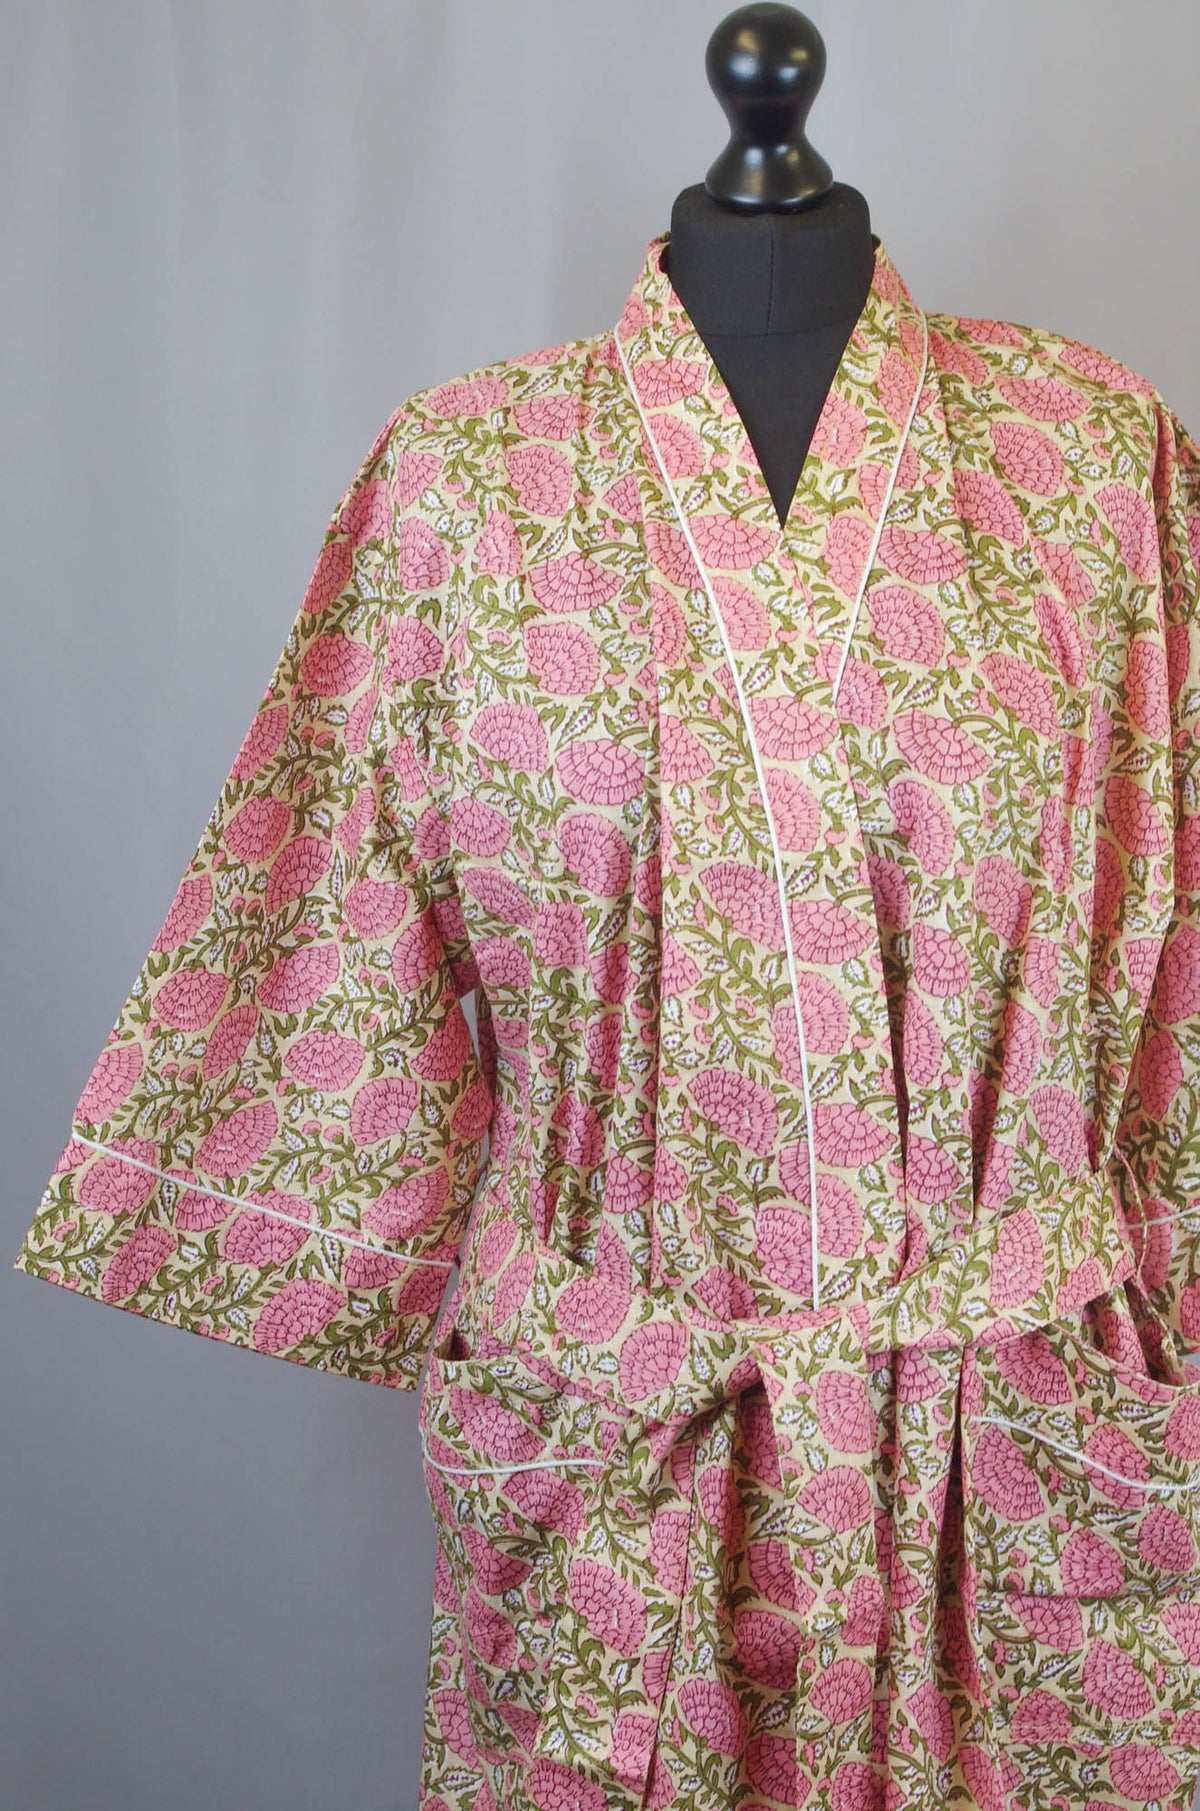 Kimono-Morgenmantel aus Baumwolle in Korallenrosa mit Blumenmuster auf beigefarbener Basis